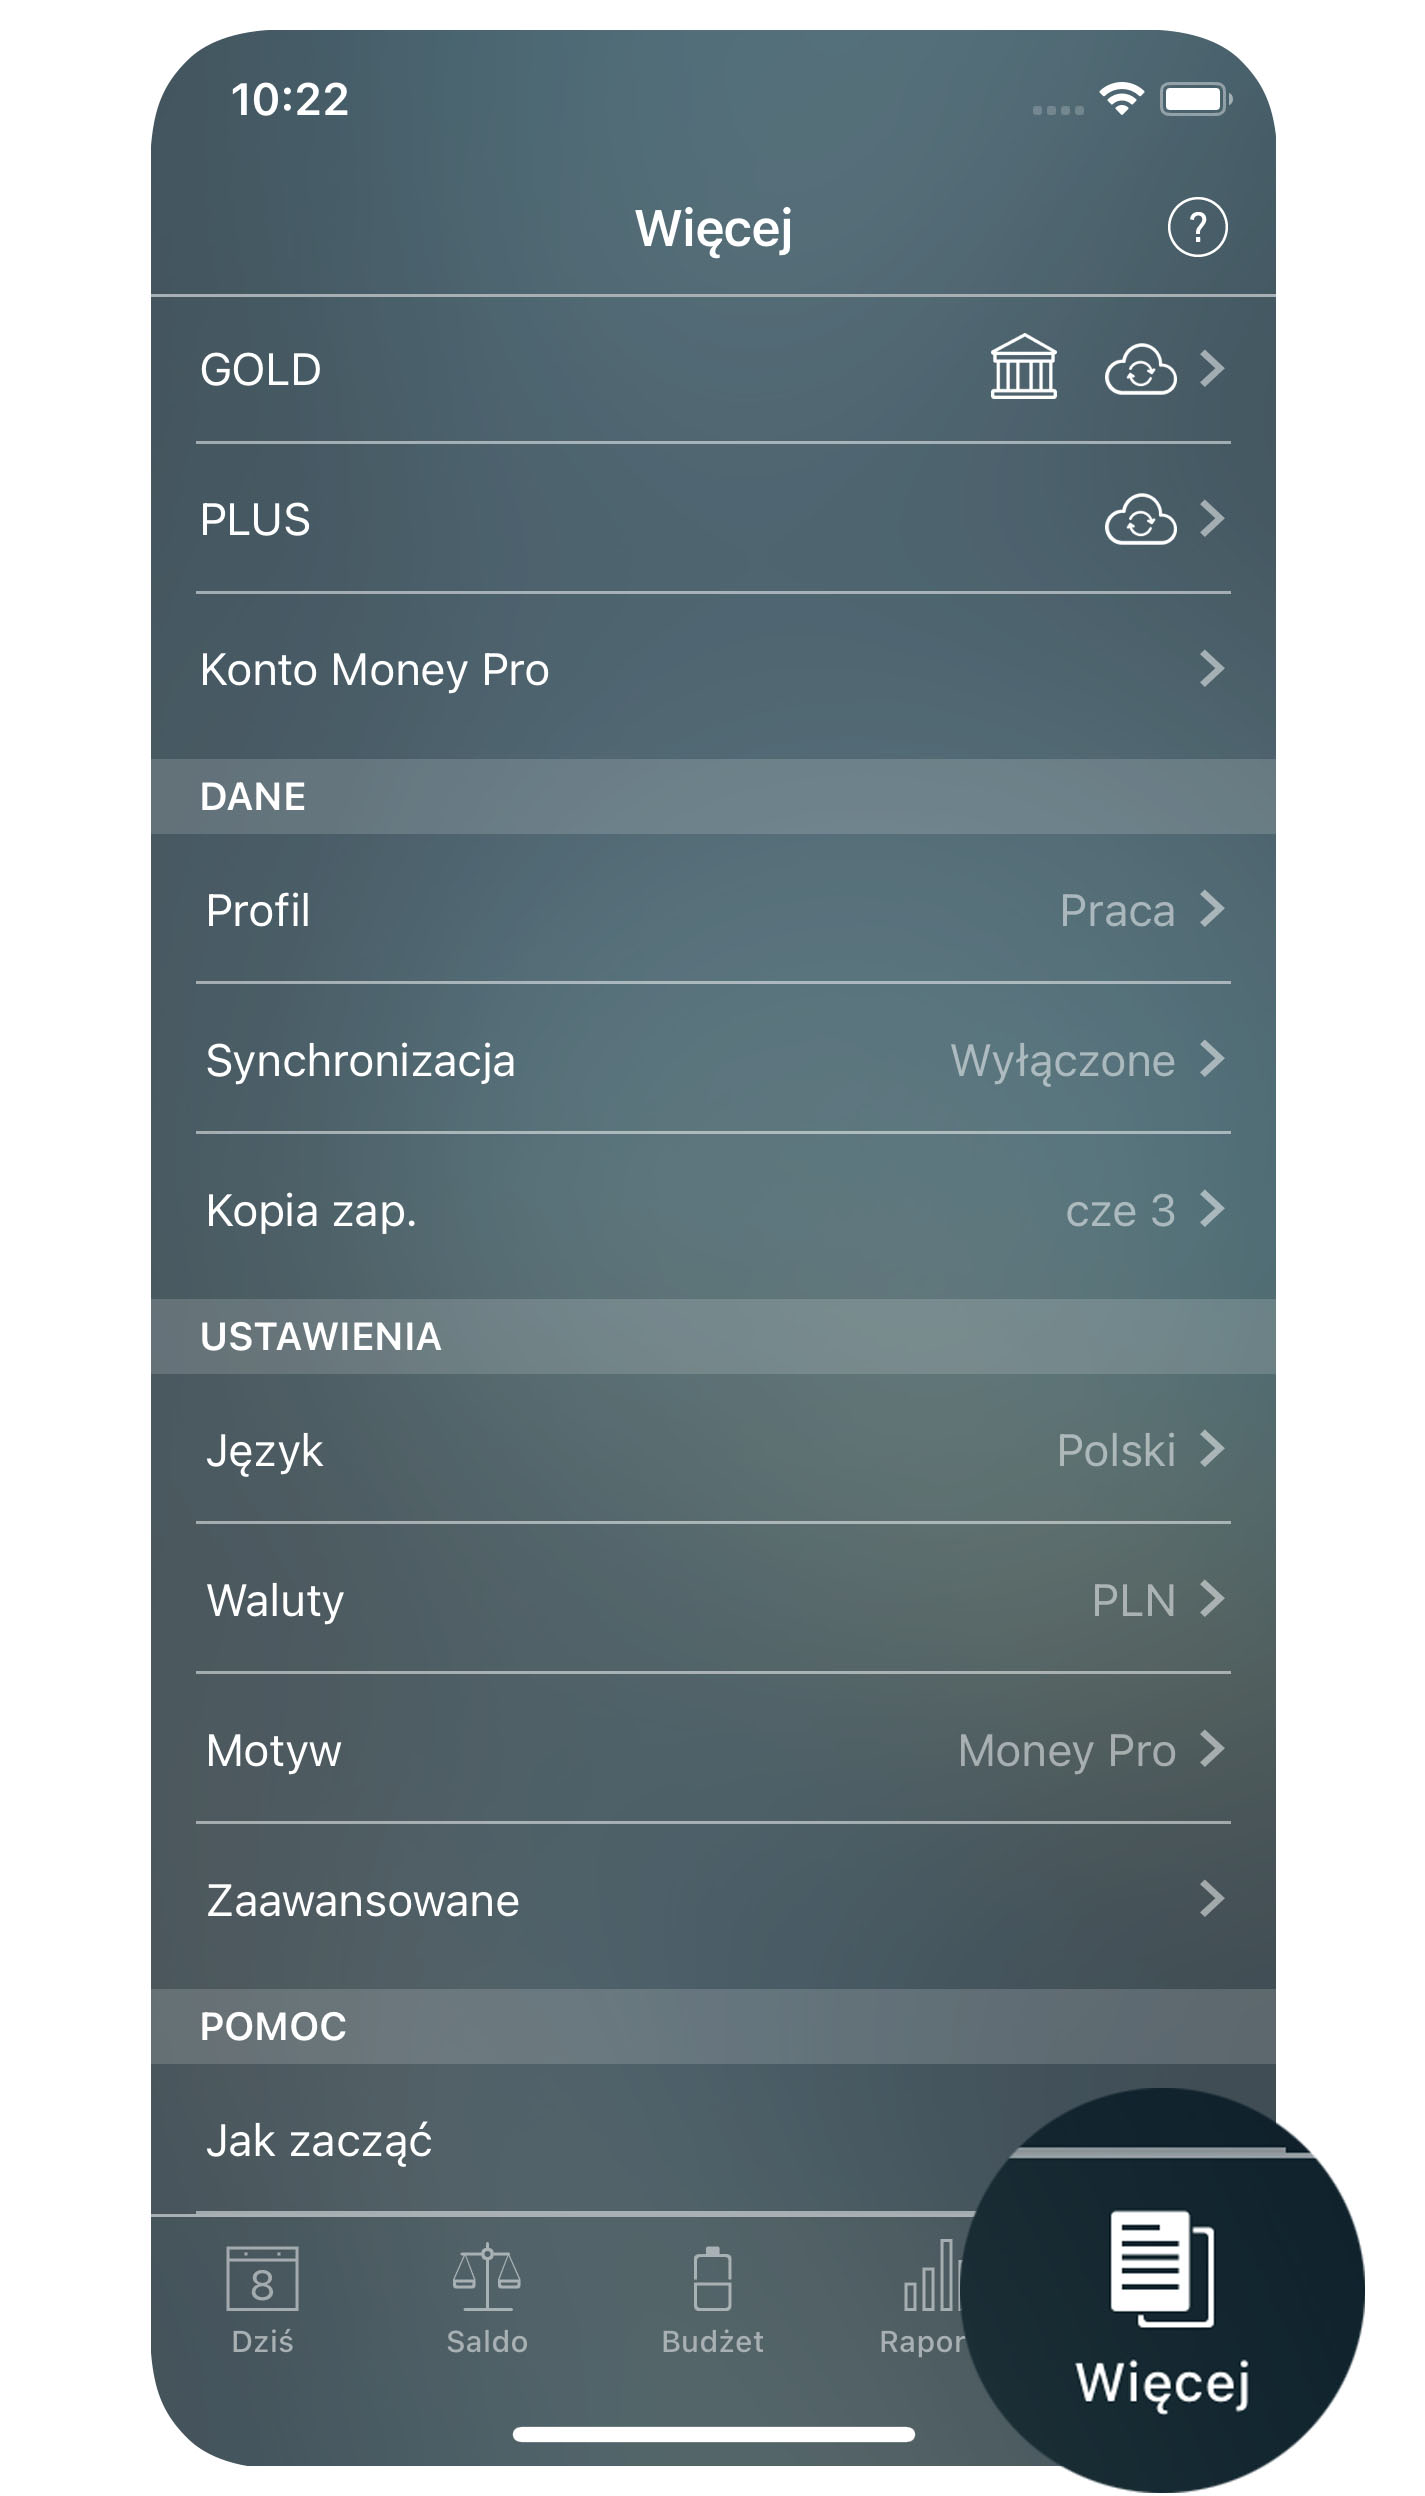 Money Pro - Więcej (kopije zapasowe, profile, synchronizacja) - iPhone